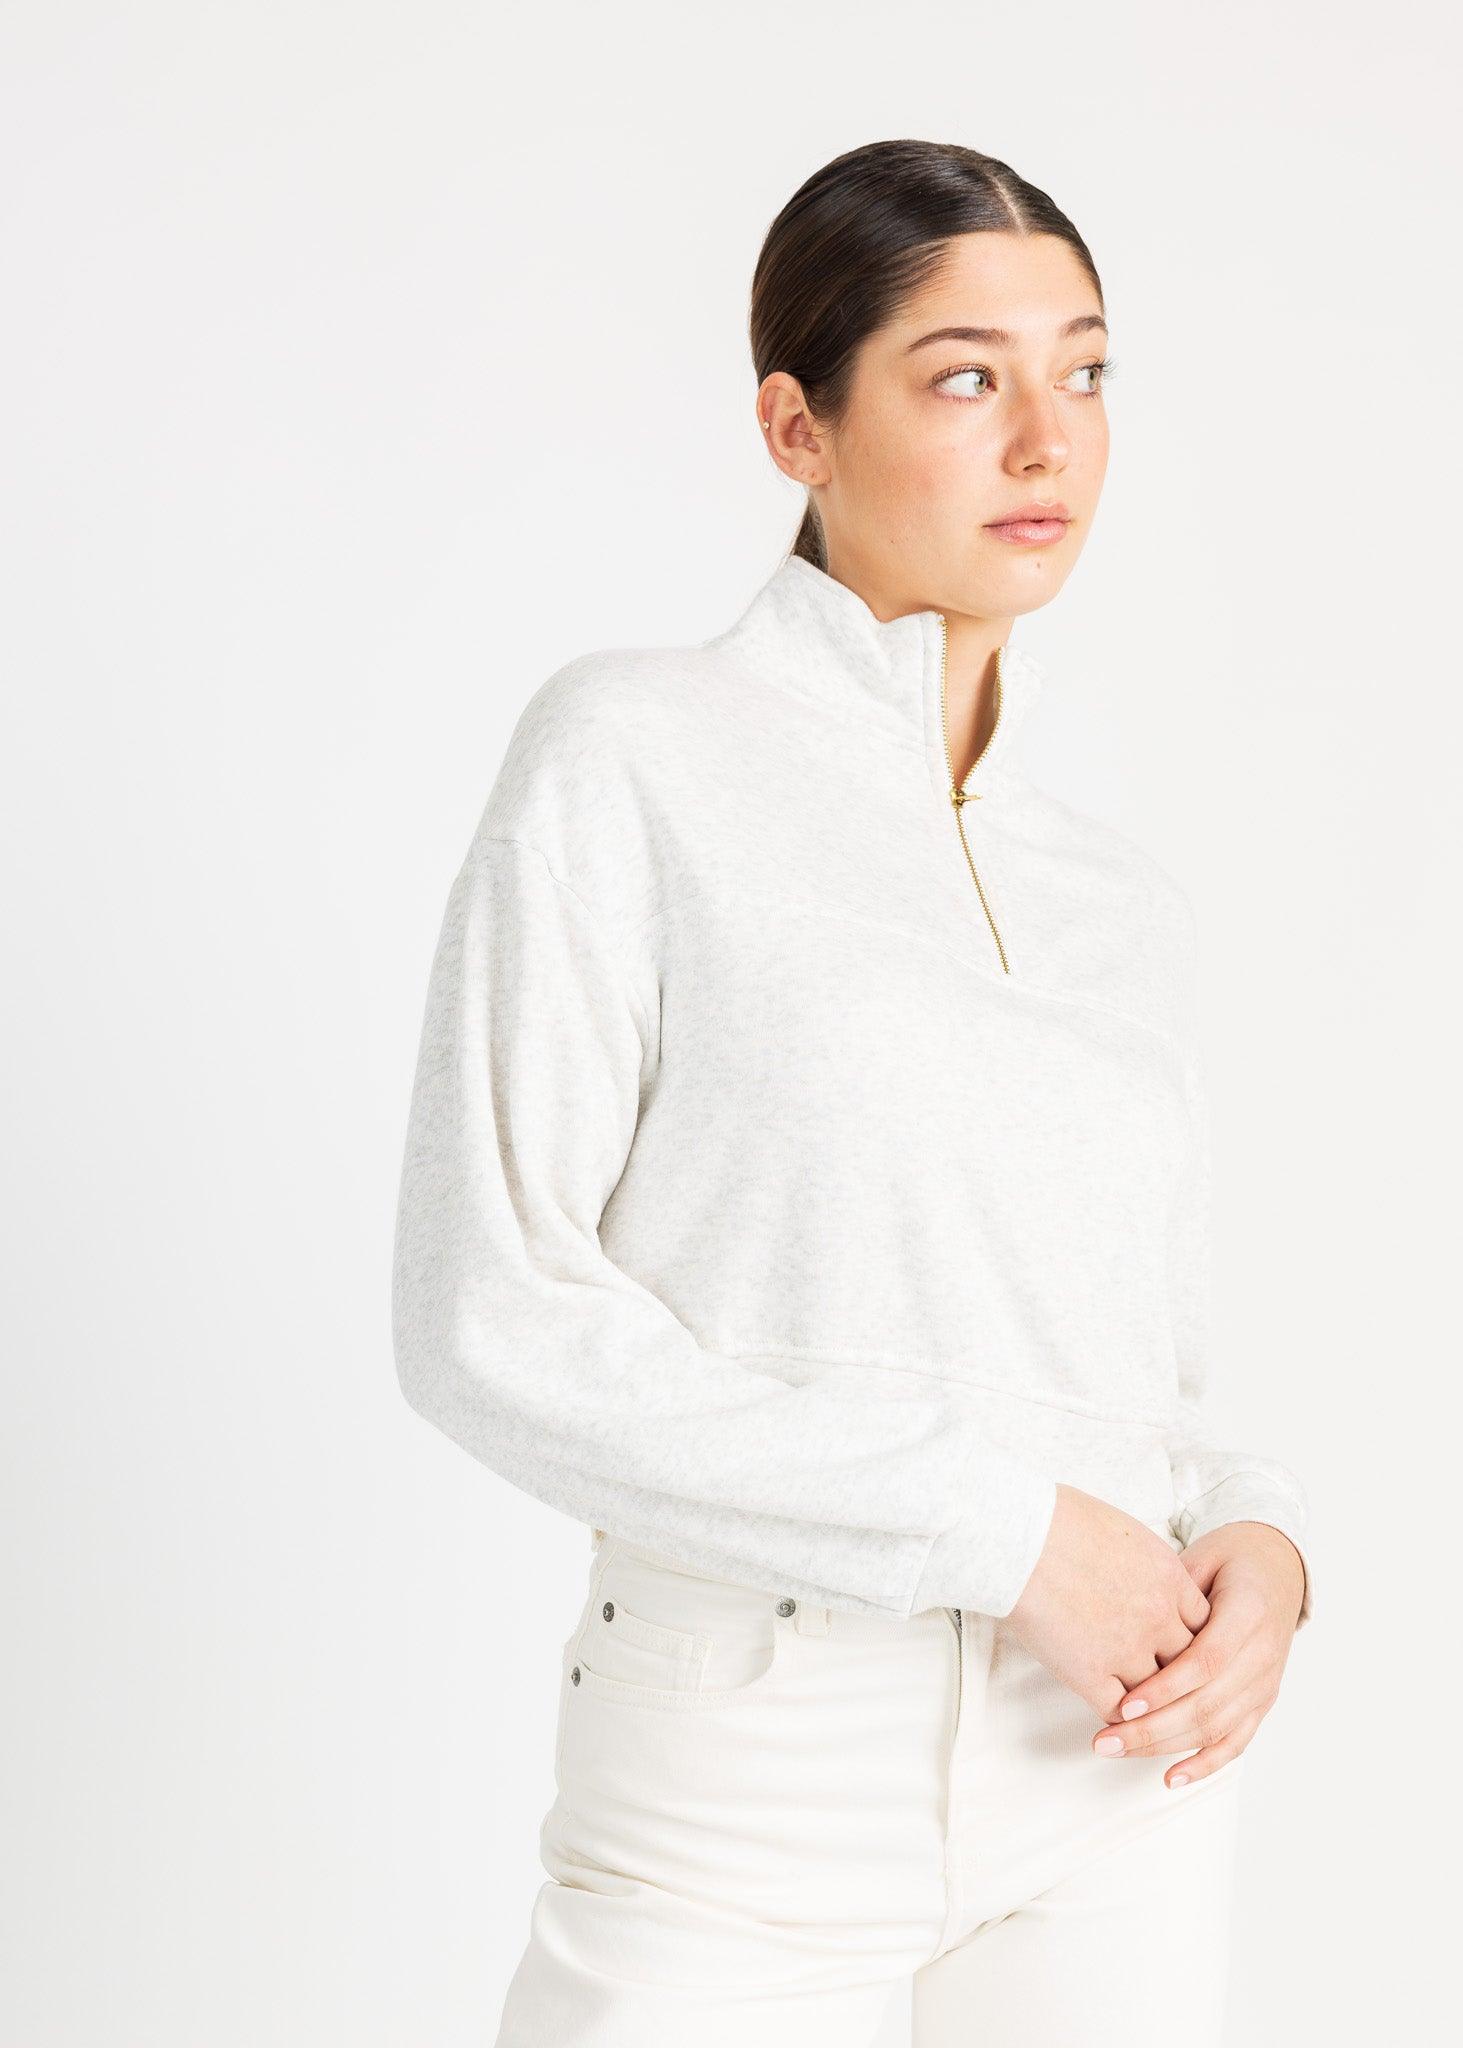 MEL sweater - Yana K